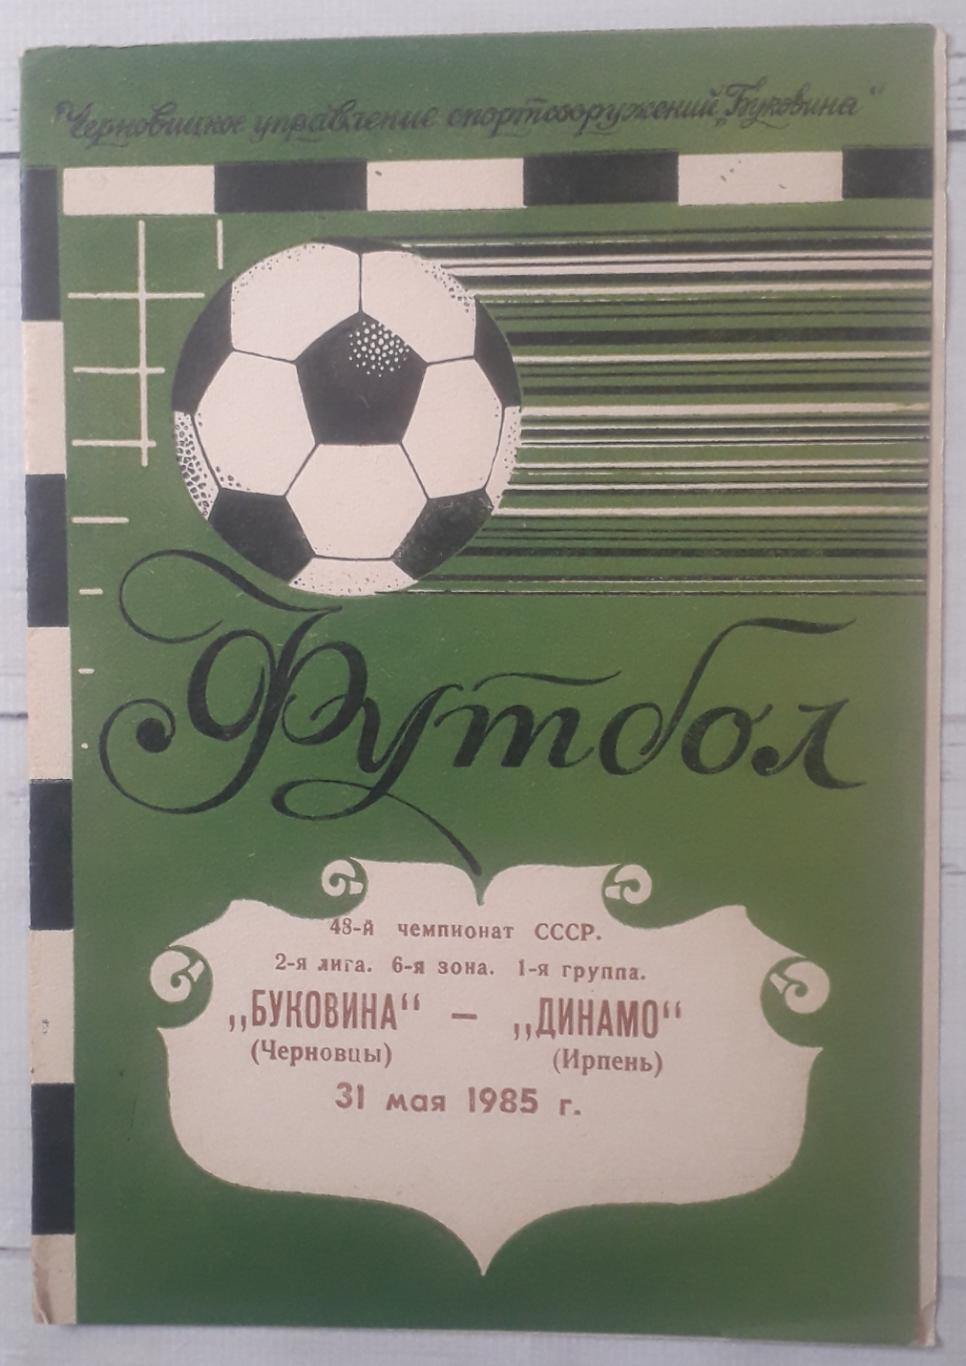 Буковина Чернівці - Динамо Ірпінь 31.05.1985.